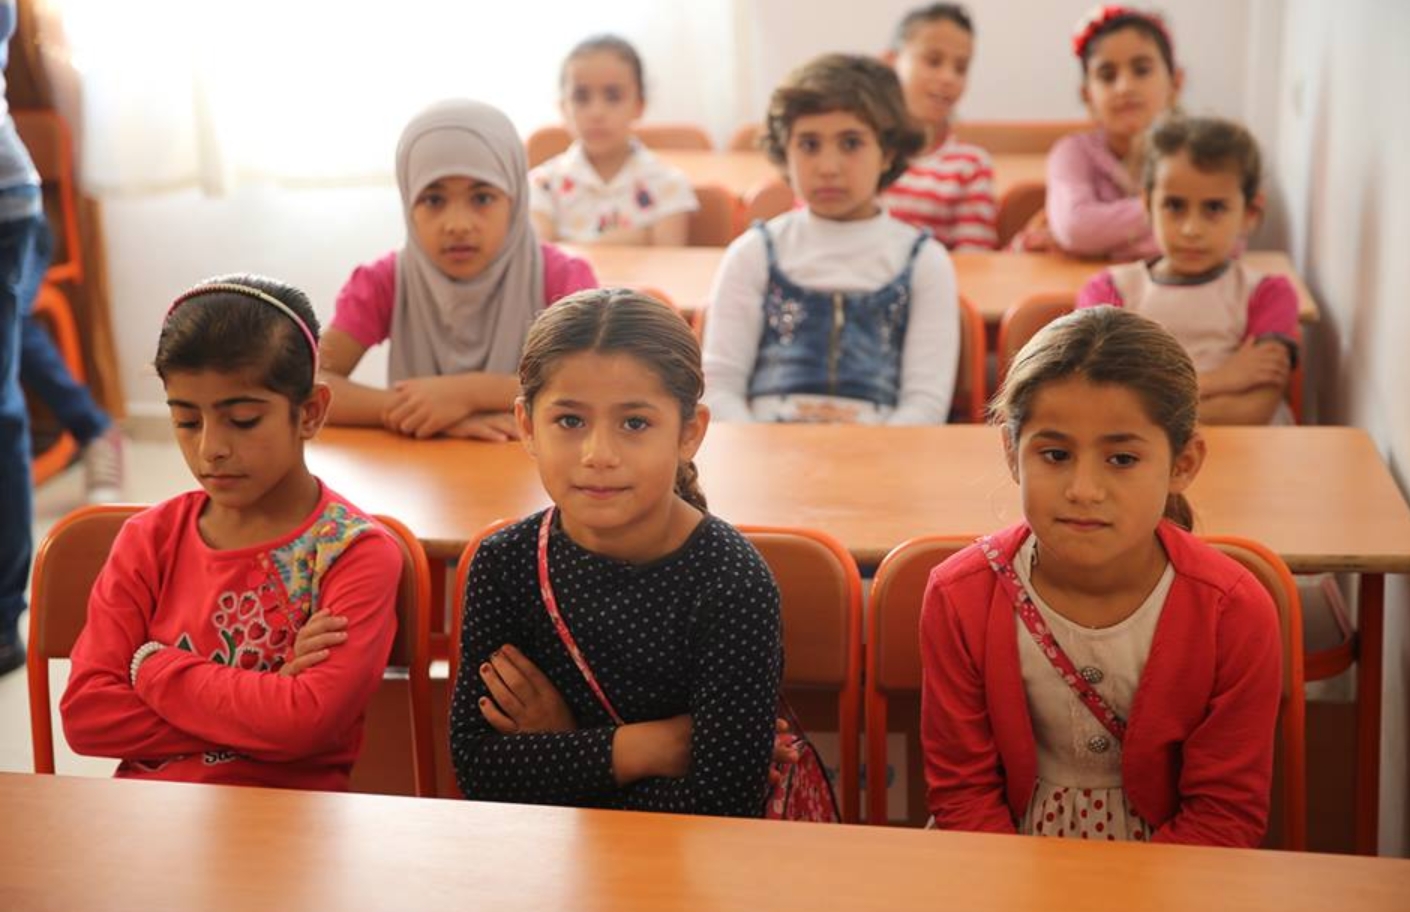 مسؤول تركي: أطفال السوريين يبدعون ويتكيّفون مع نظامنا التعليمي بسرعة كبيرة